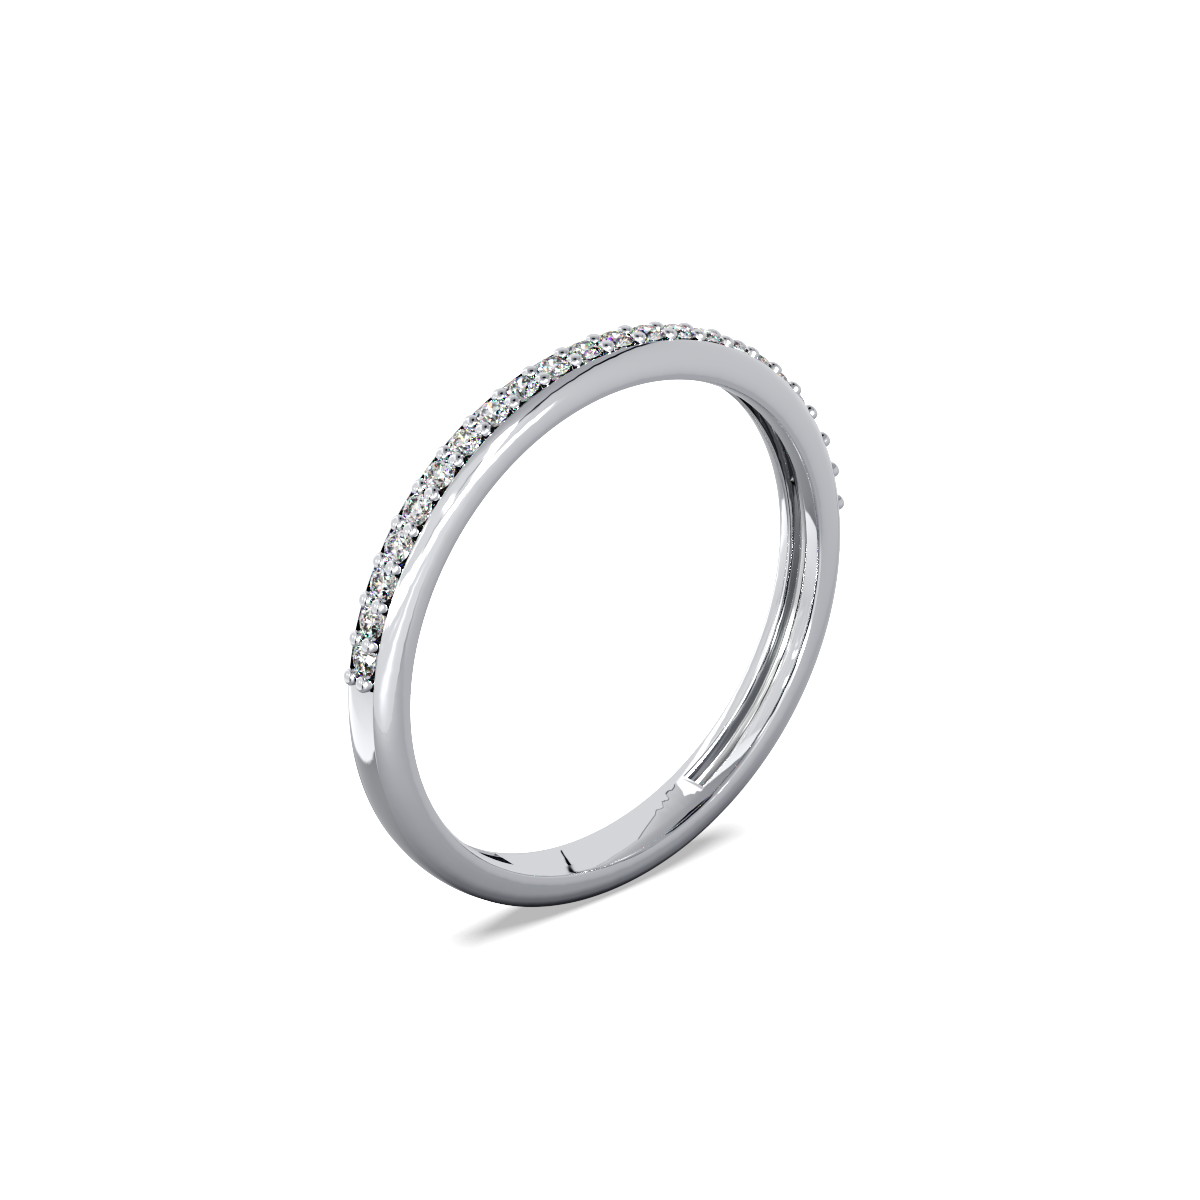 Кольцо с дорожкой бриллиантов.